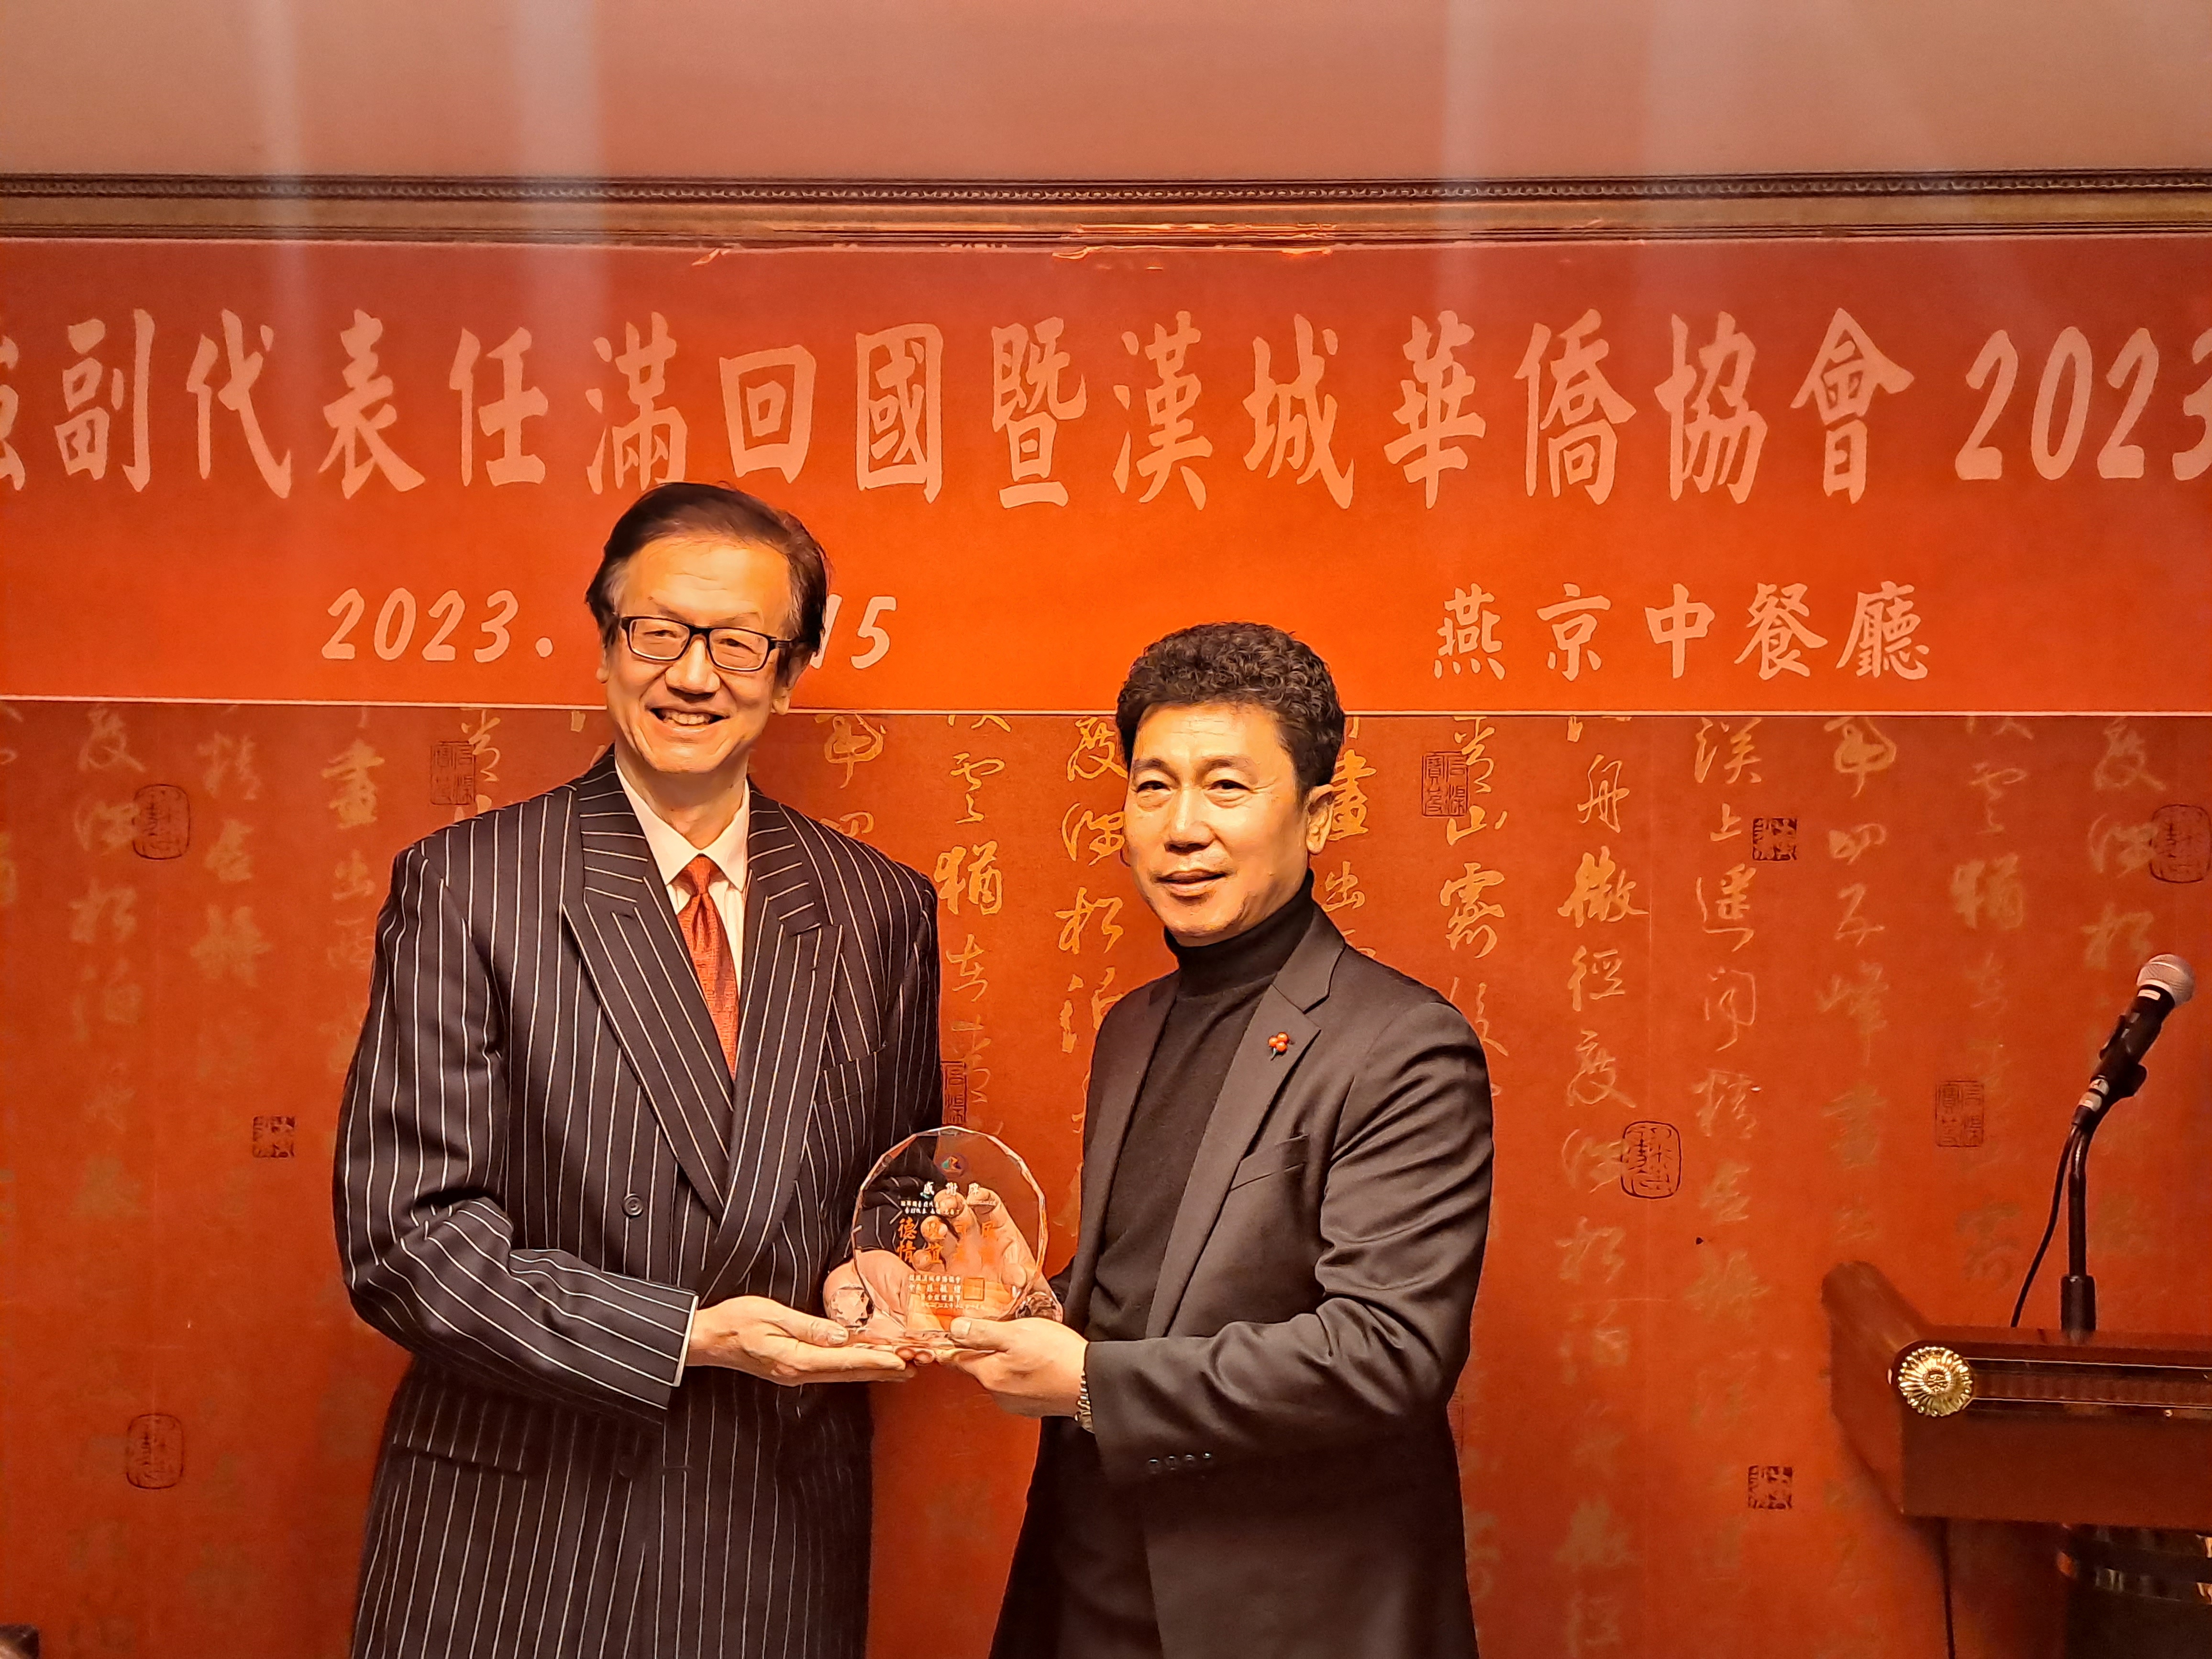 2023年12月15日漢城華僑協會舉行 歡送齊副代表榮調暨年終晚宴會